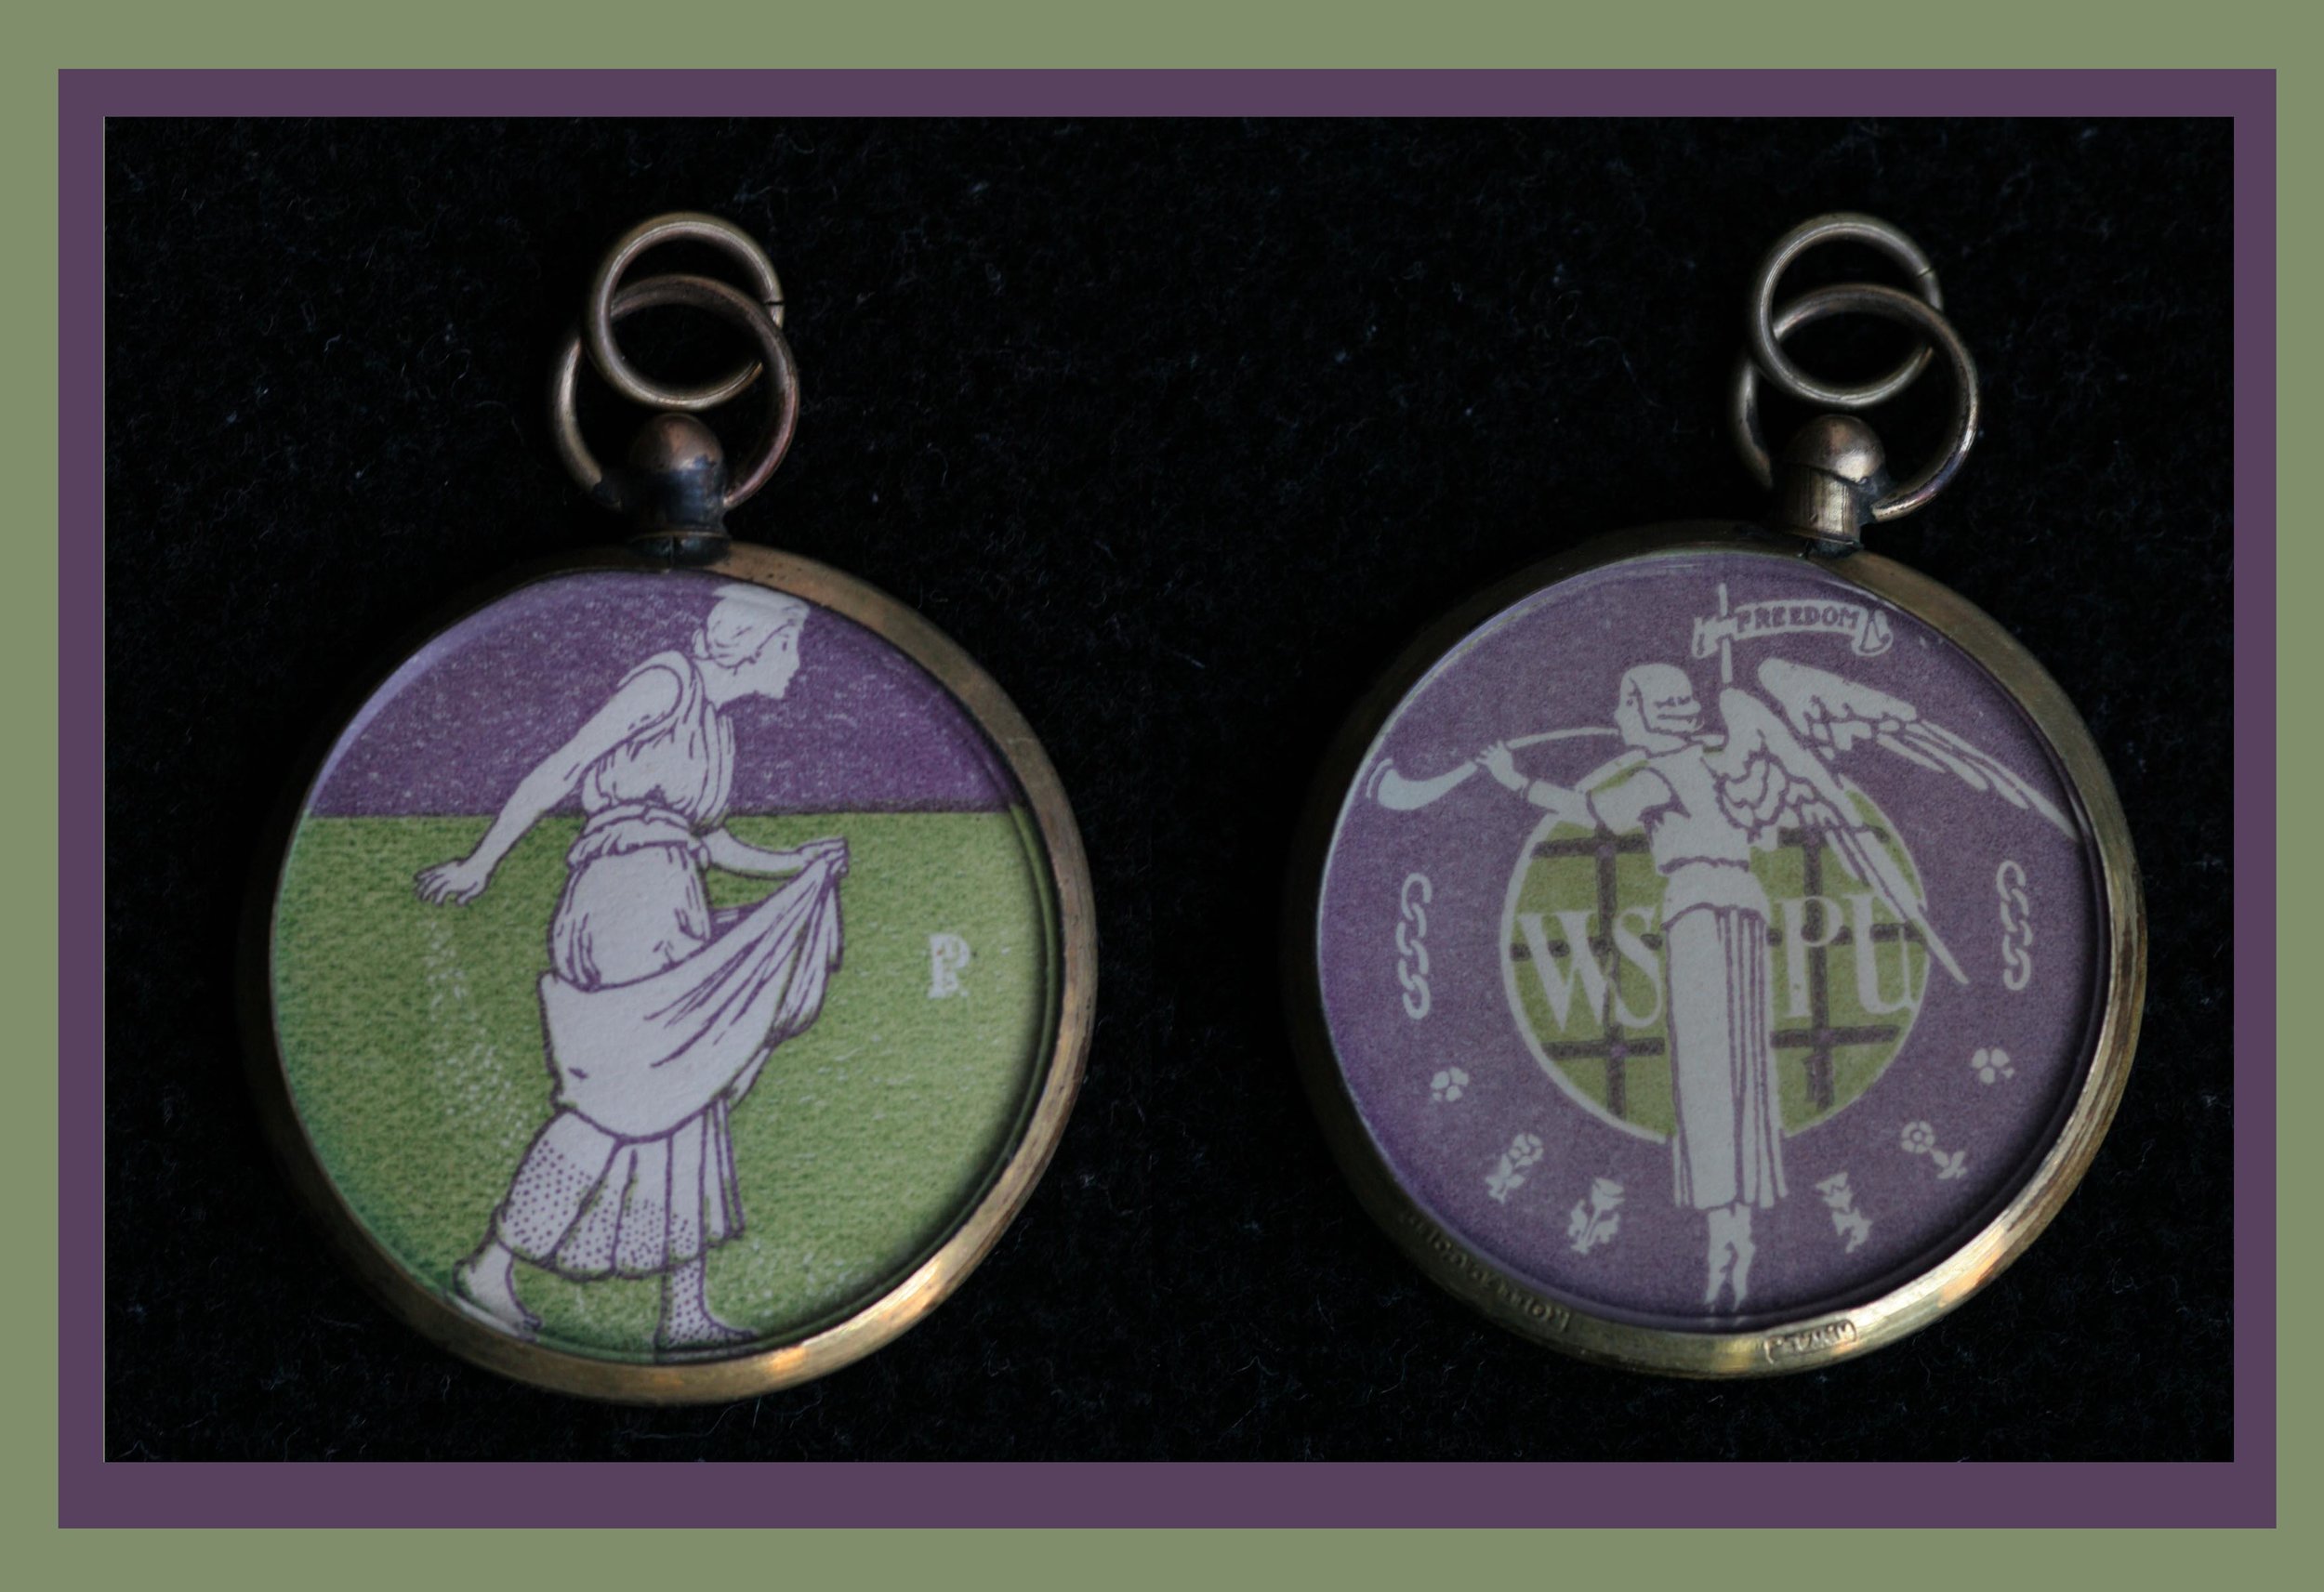 WSPU Medal.jpg